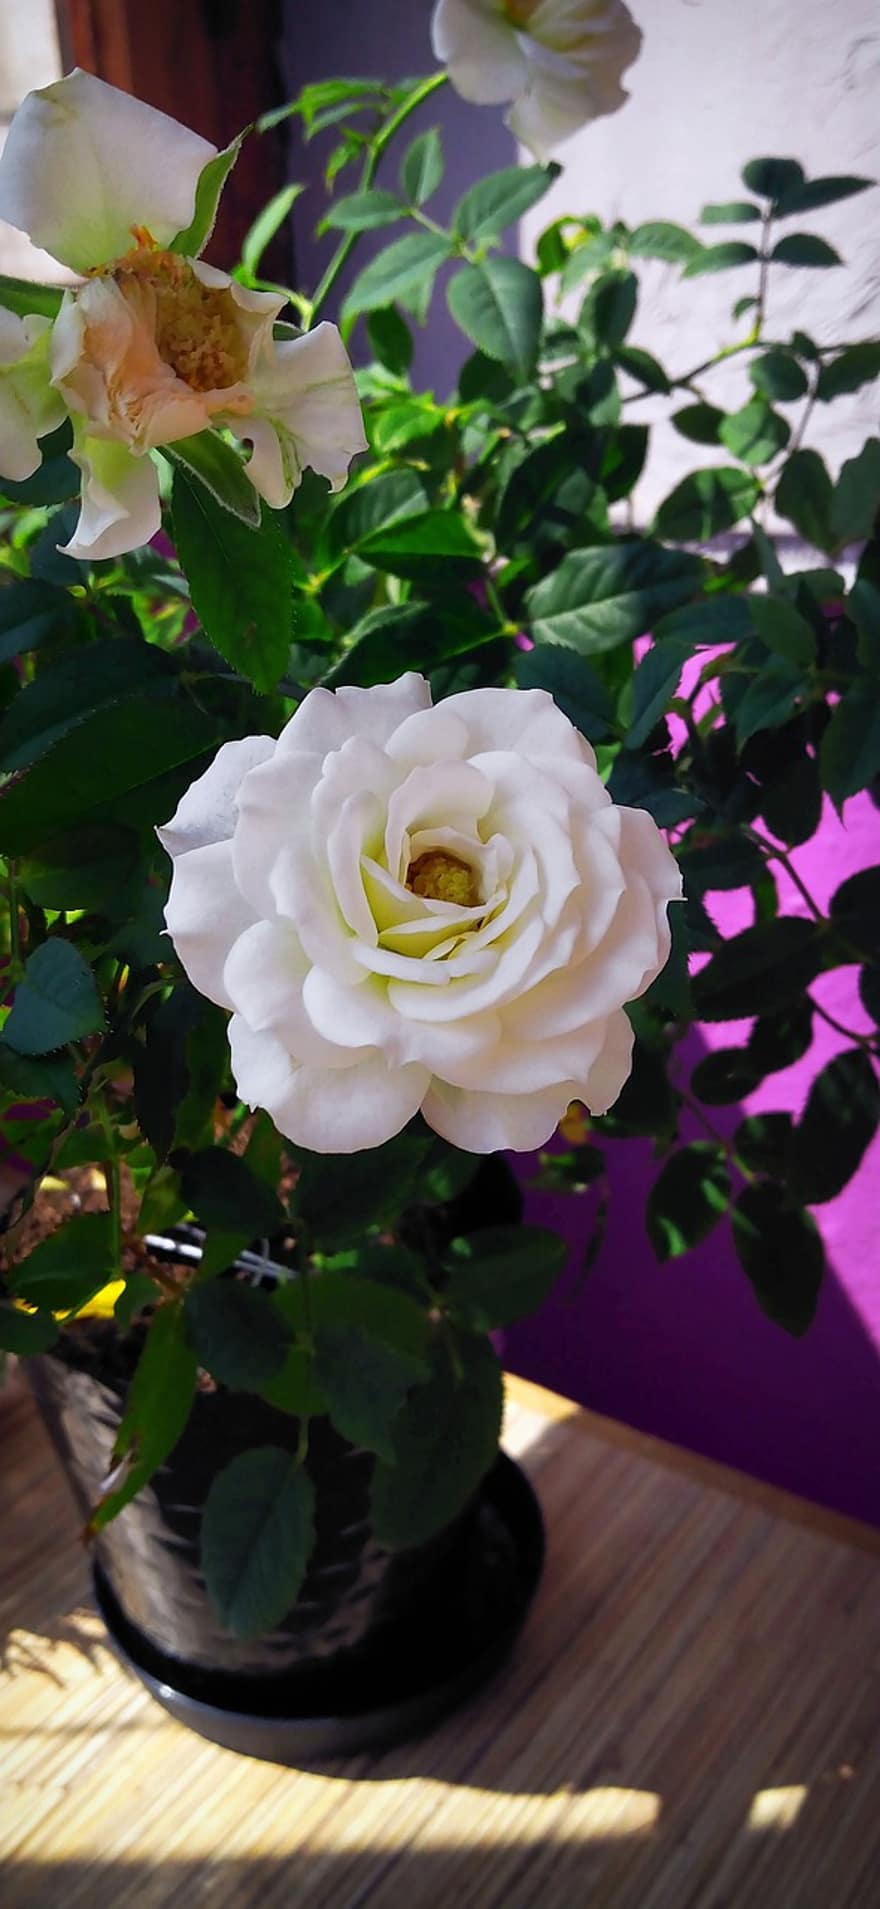 गुलाब का फूल, सफेद गुलाब, फूल, सफेद, पत्ती, सफ़ेद फूल, गुलाब की झाड़ी